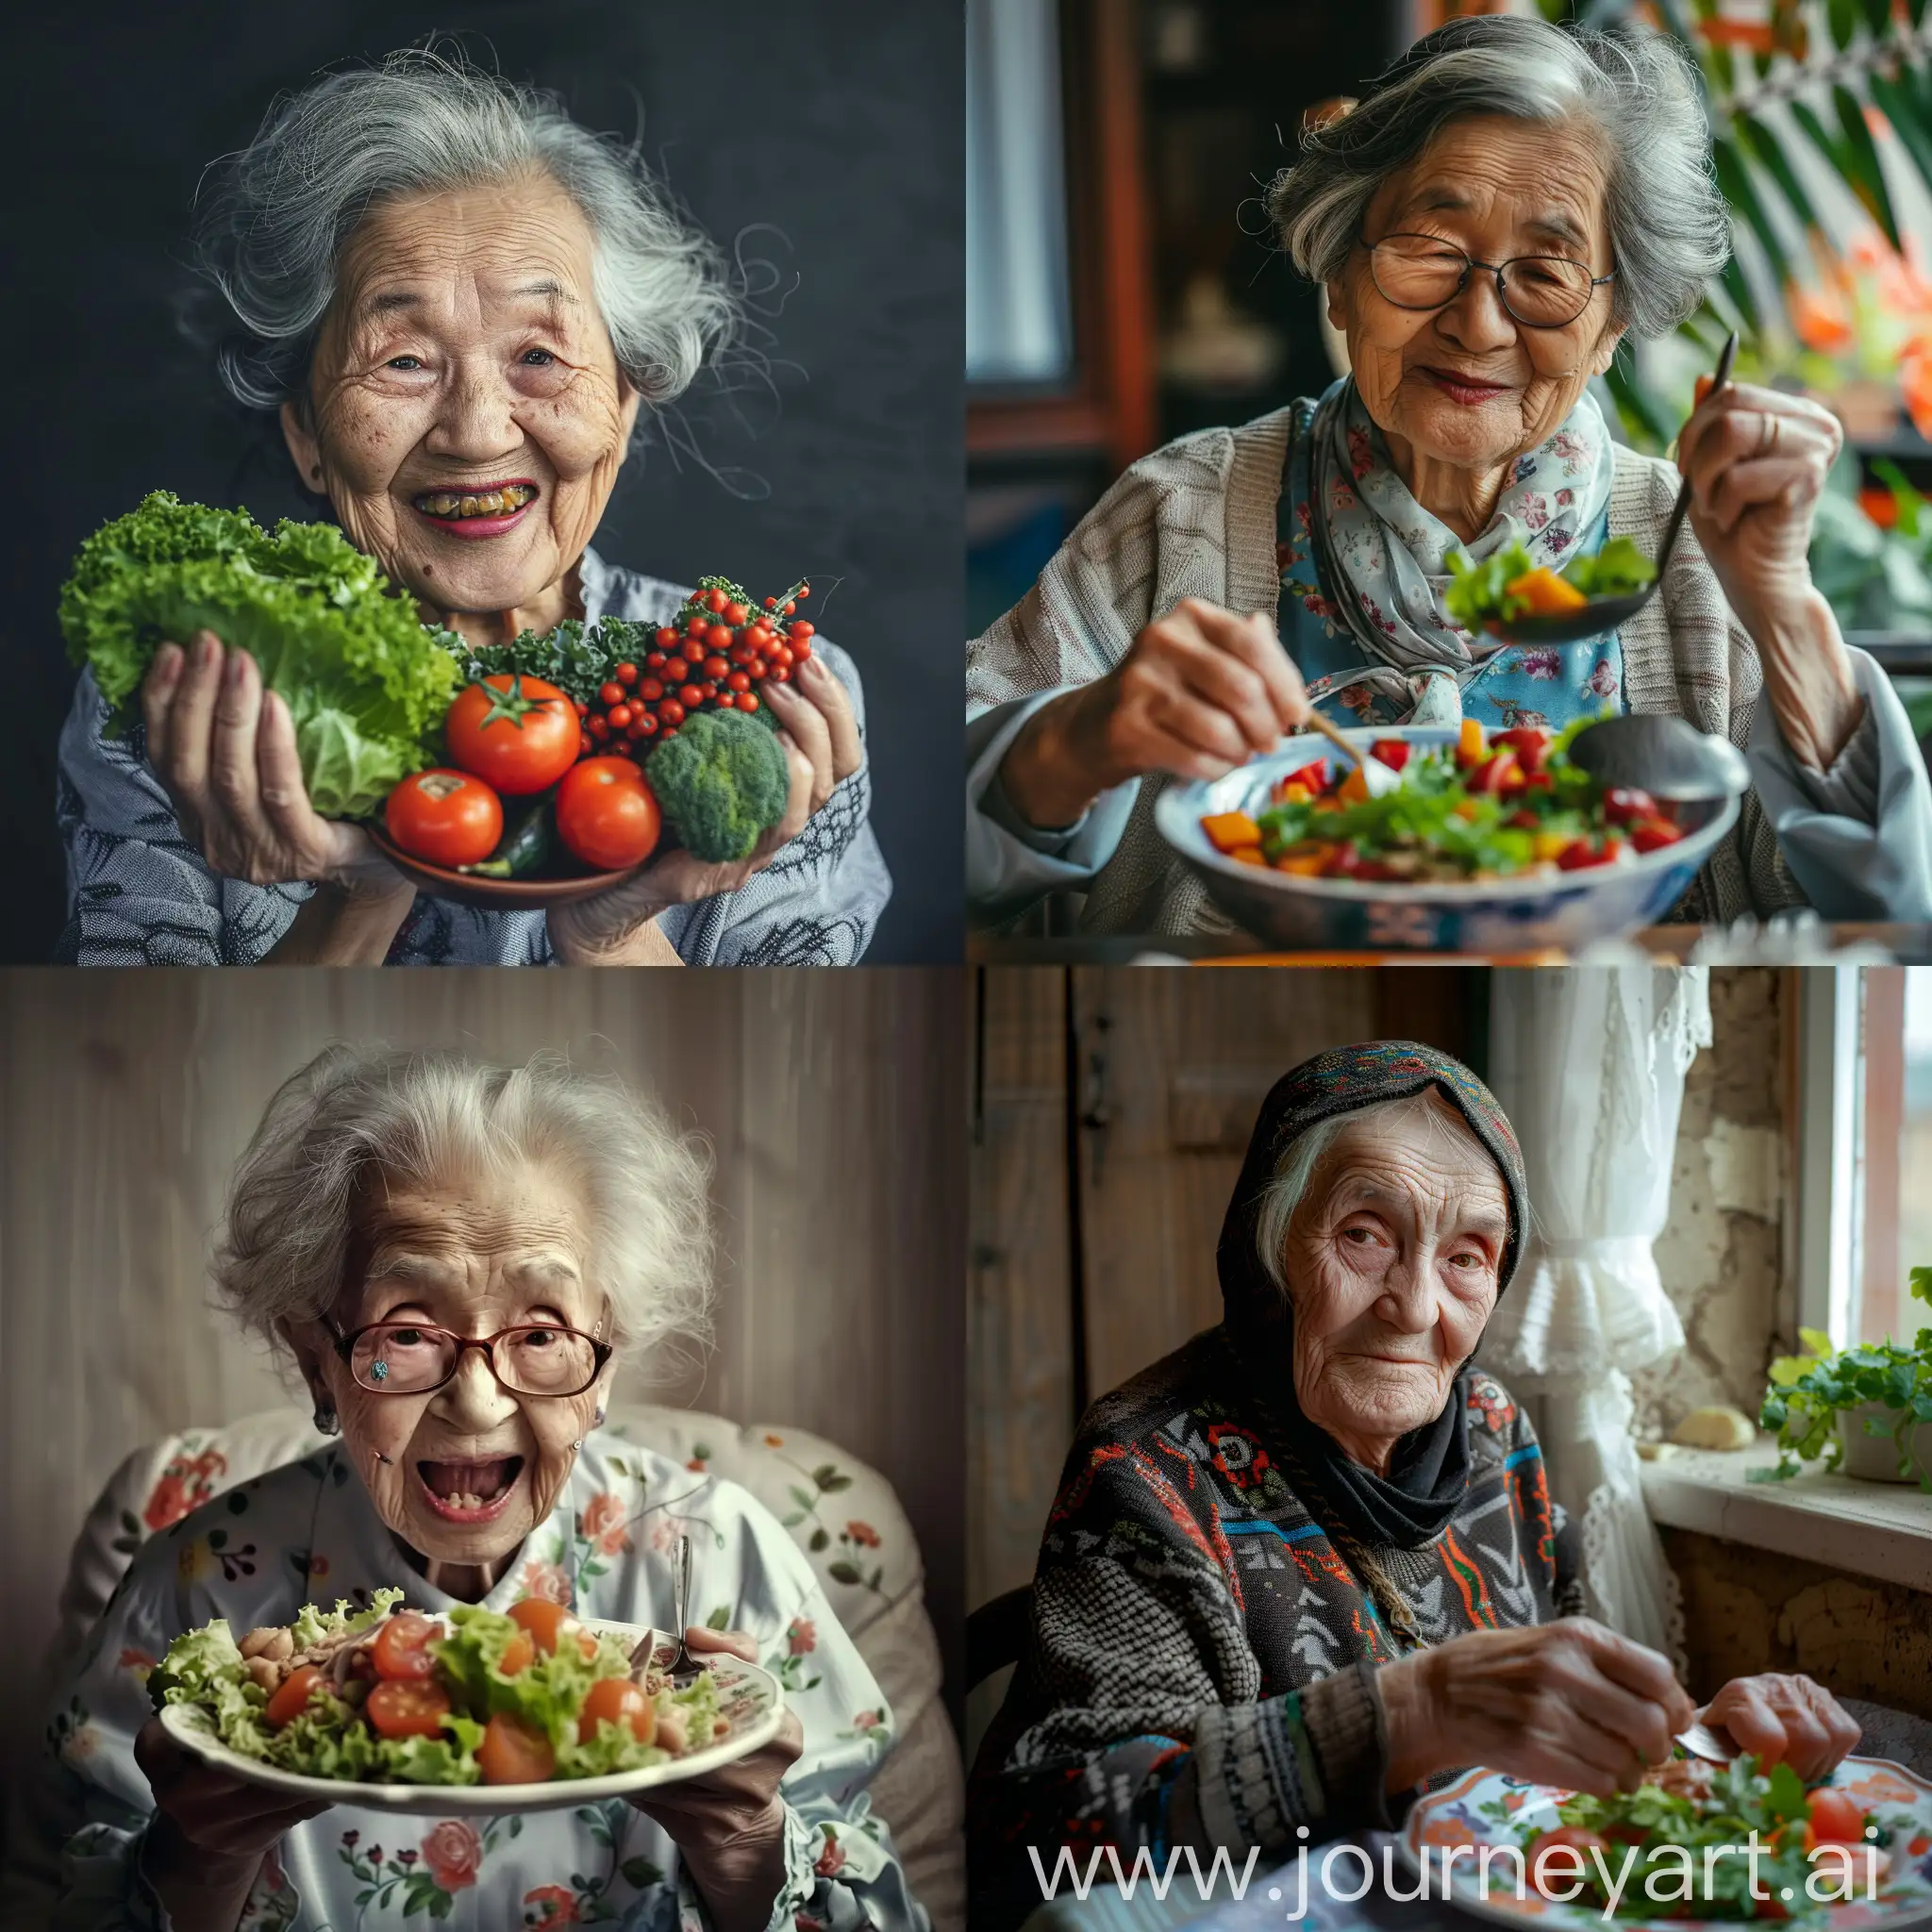 Elderly-Women-Enjoying-NutrientRich-Foods-Together